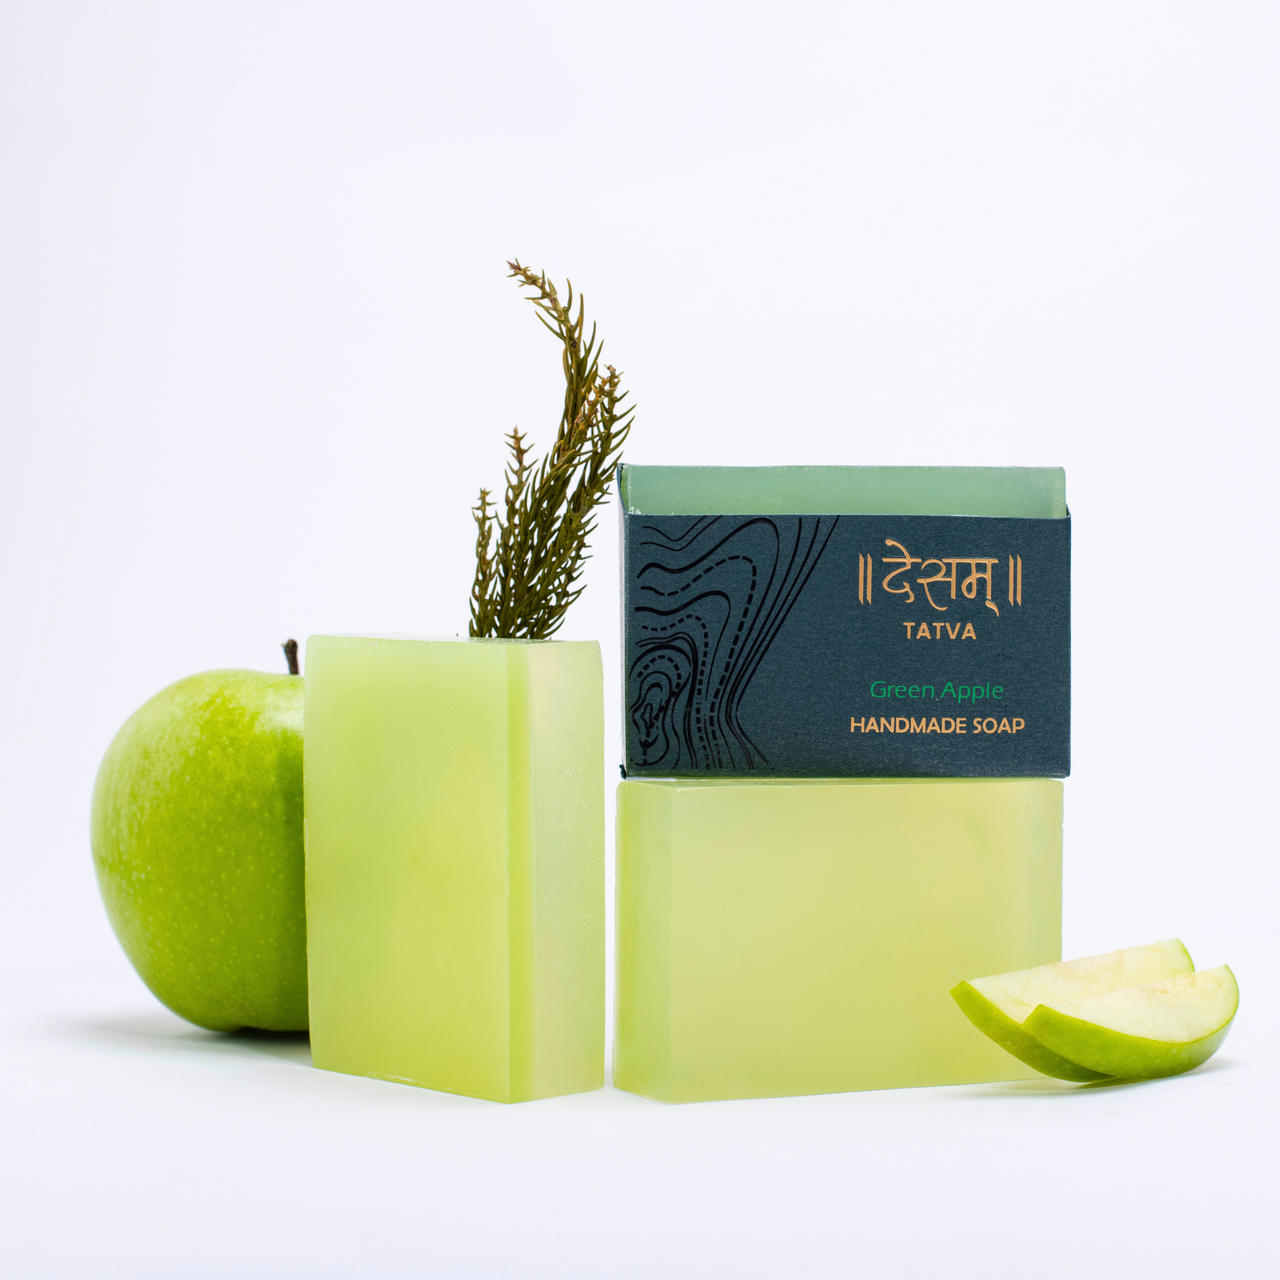 Green Apple Handmade Skincare Soap